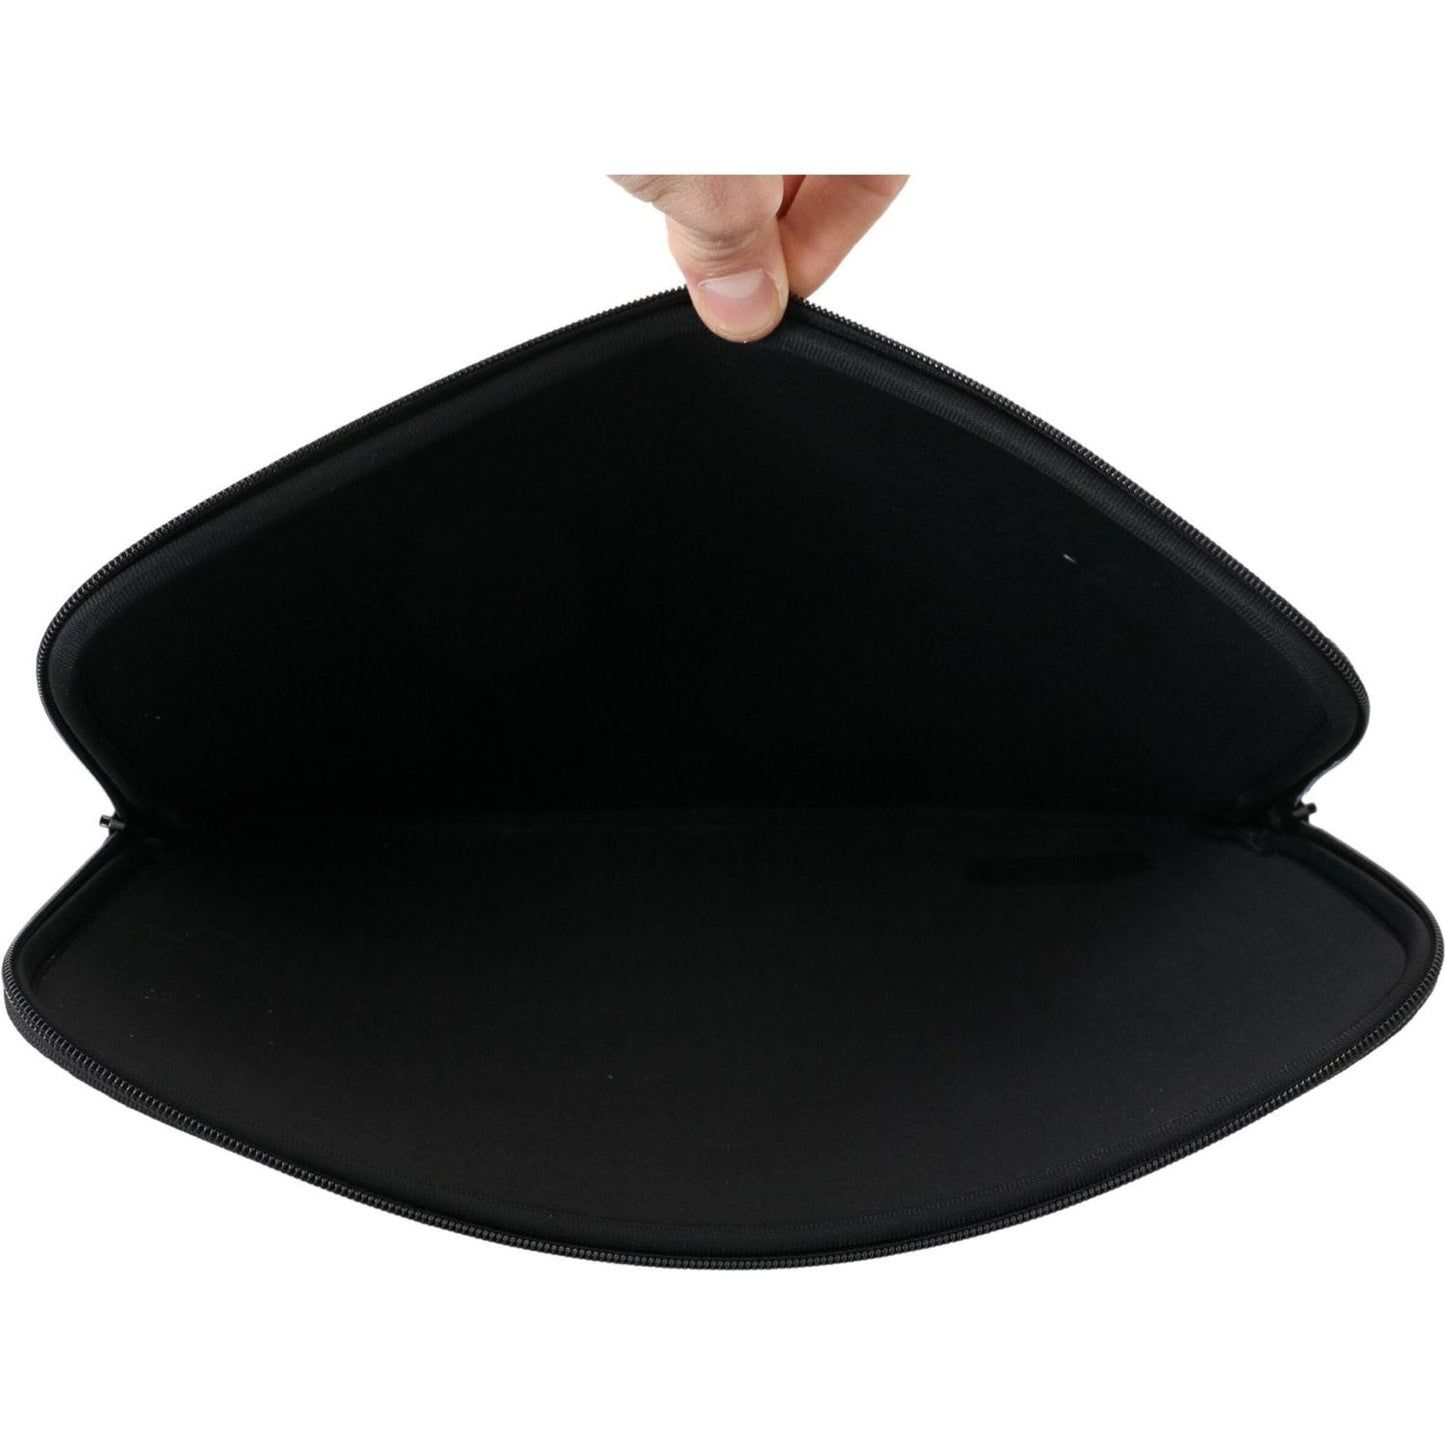 Gant Sleek Black Neoprene Laptop Sleeve black-padded-pouch-bag-zipper-cover-sleeve-case